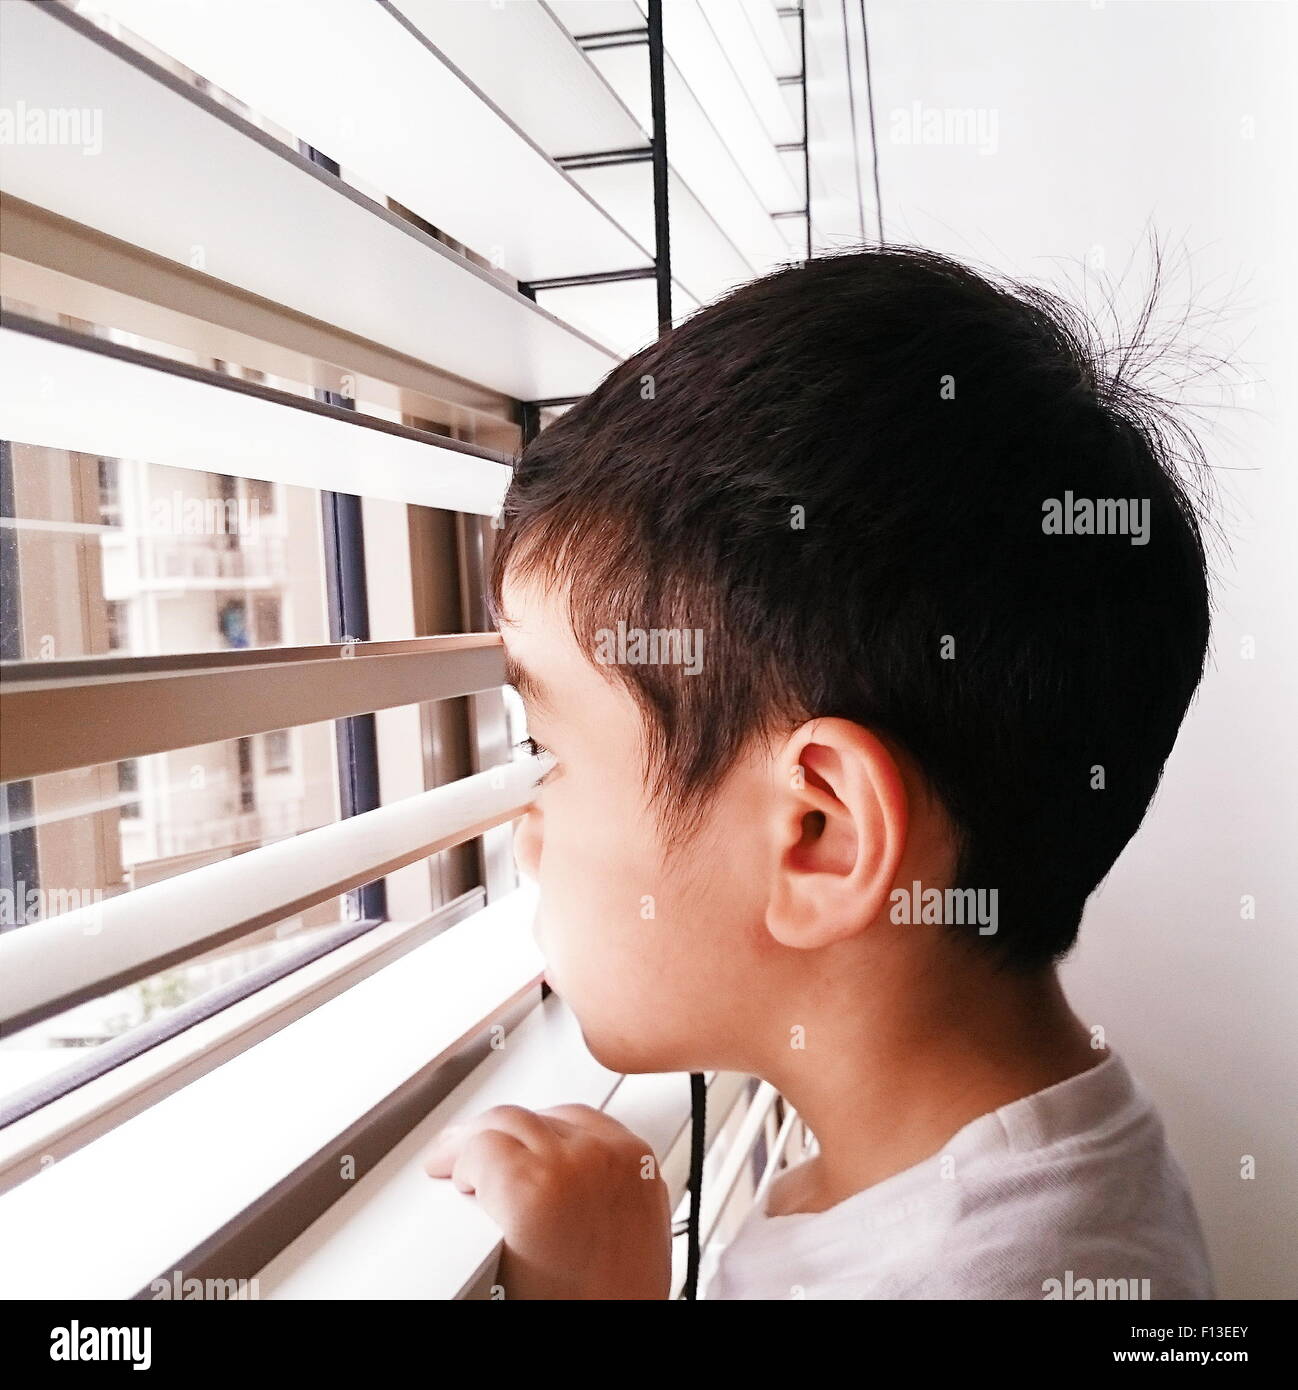 Ritratto di un ragazzo che guarda attraverso la finestra Foto Stock